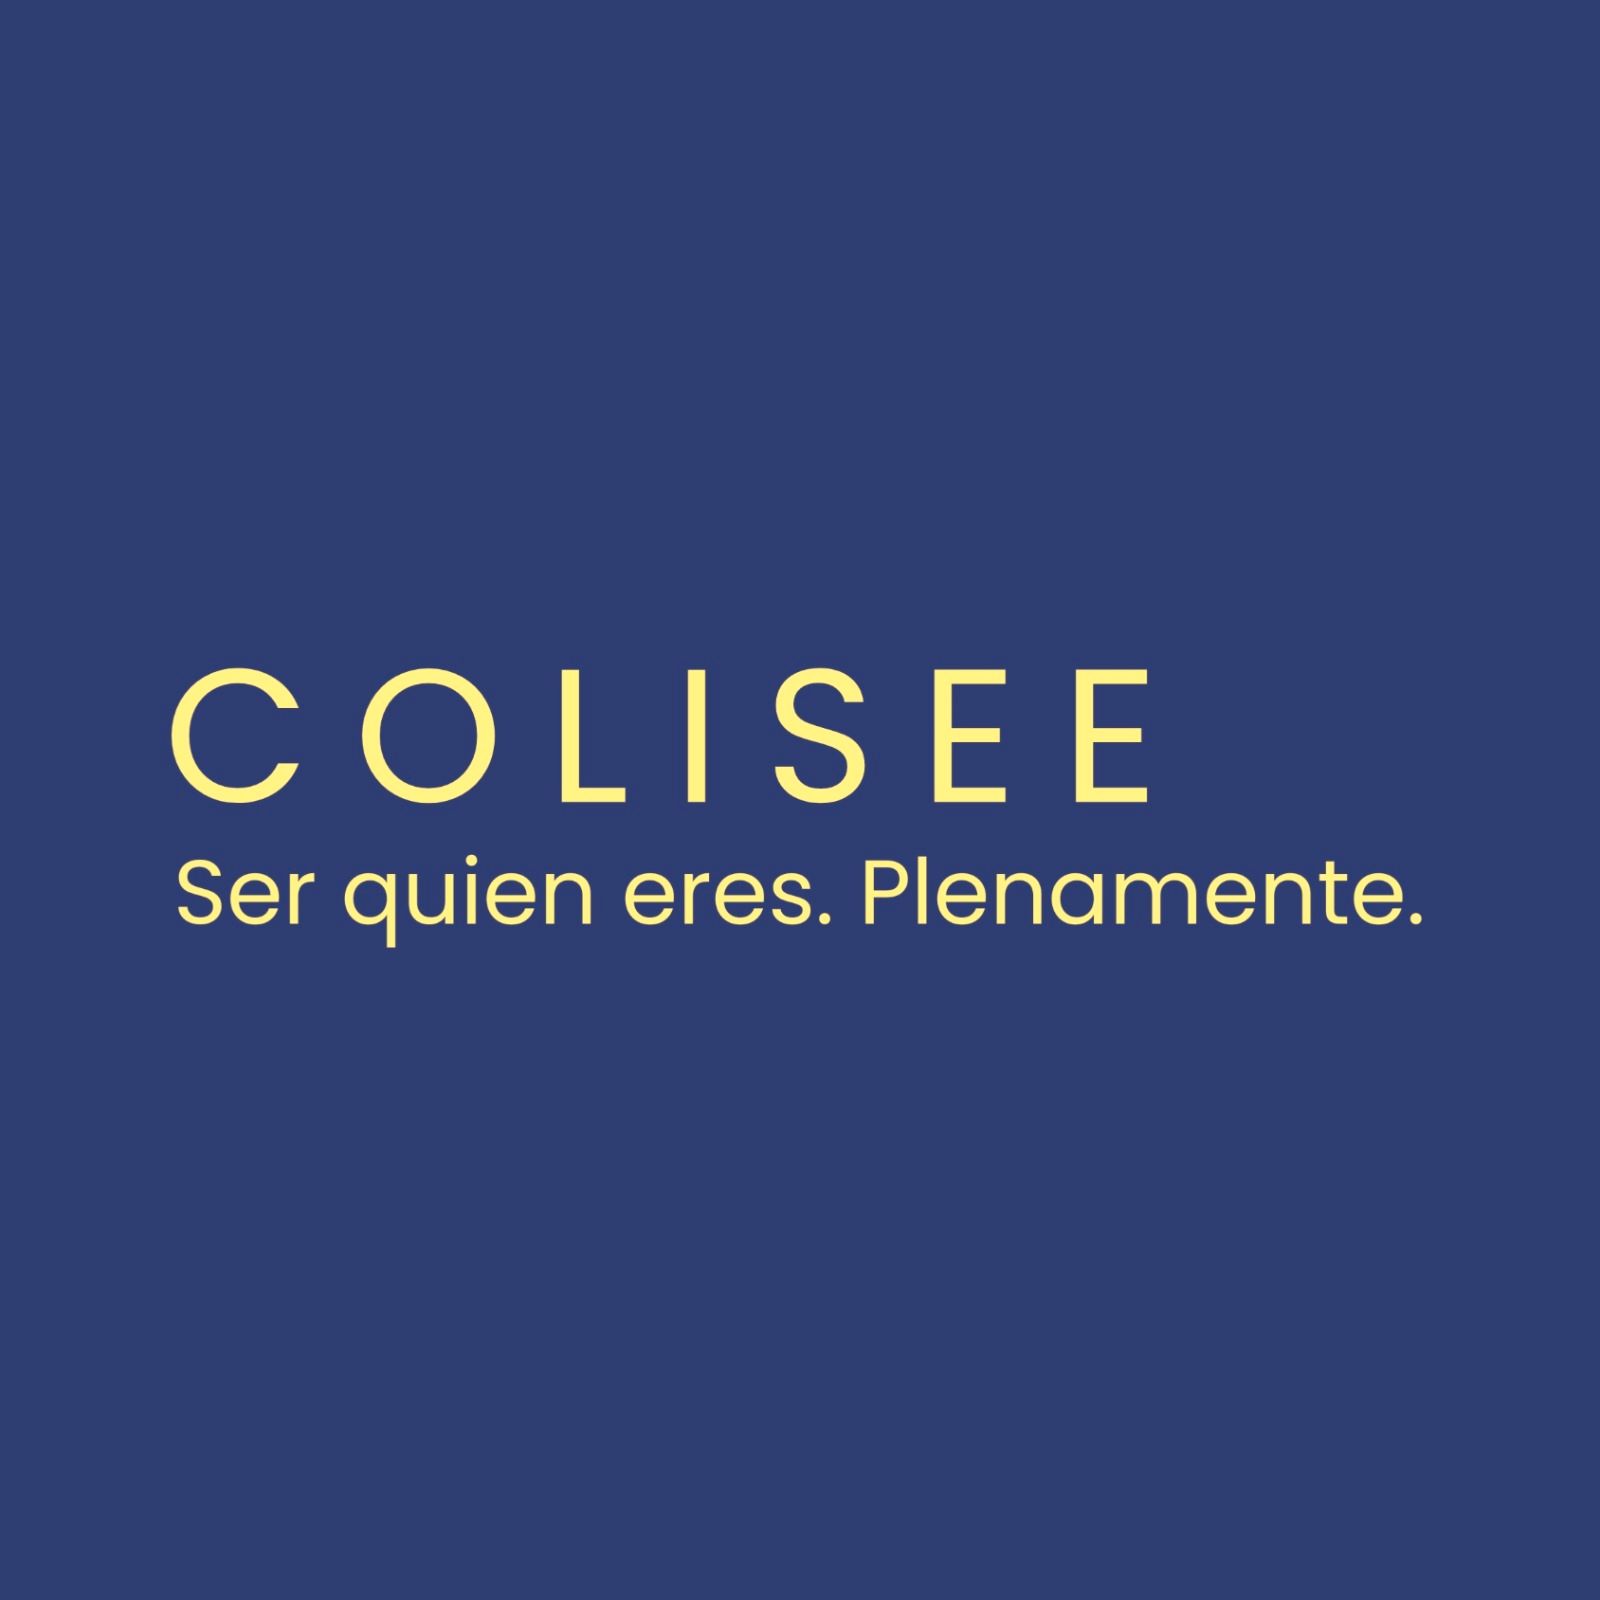 Colisee logo